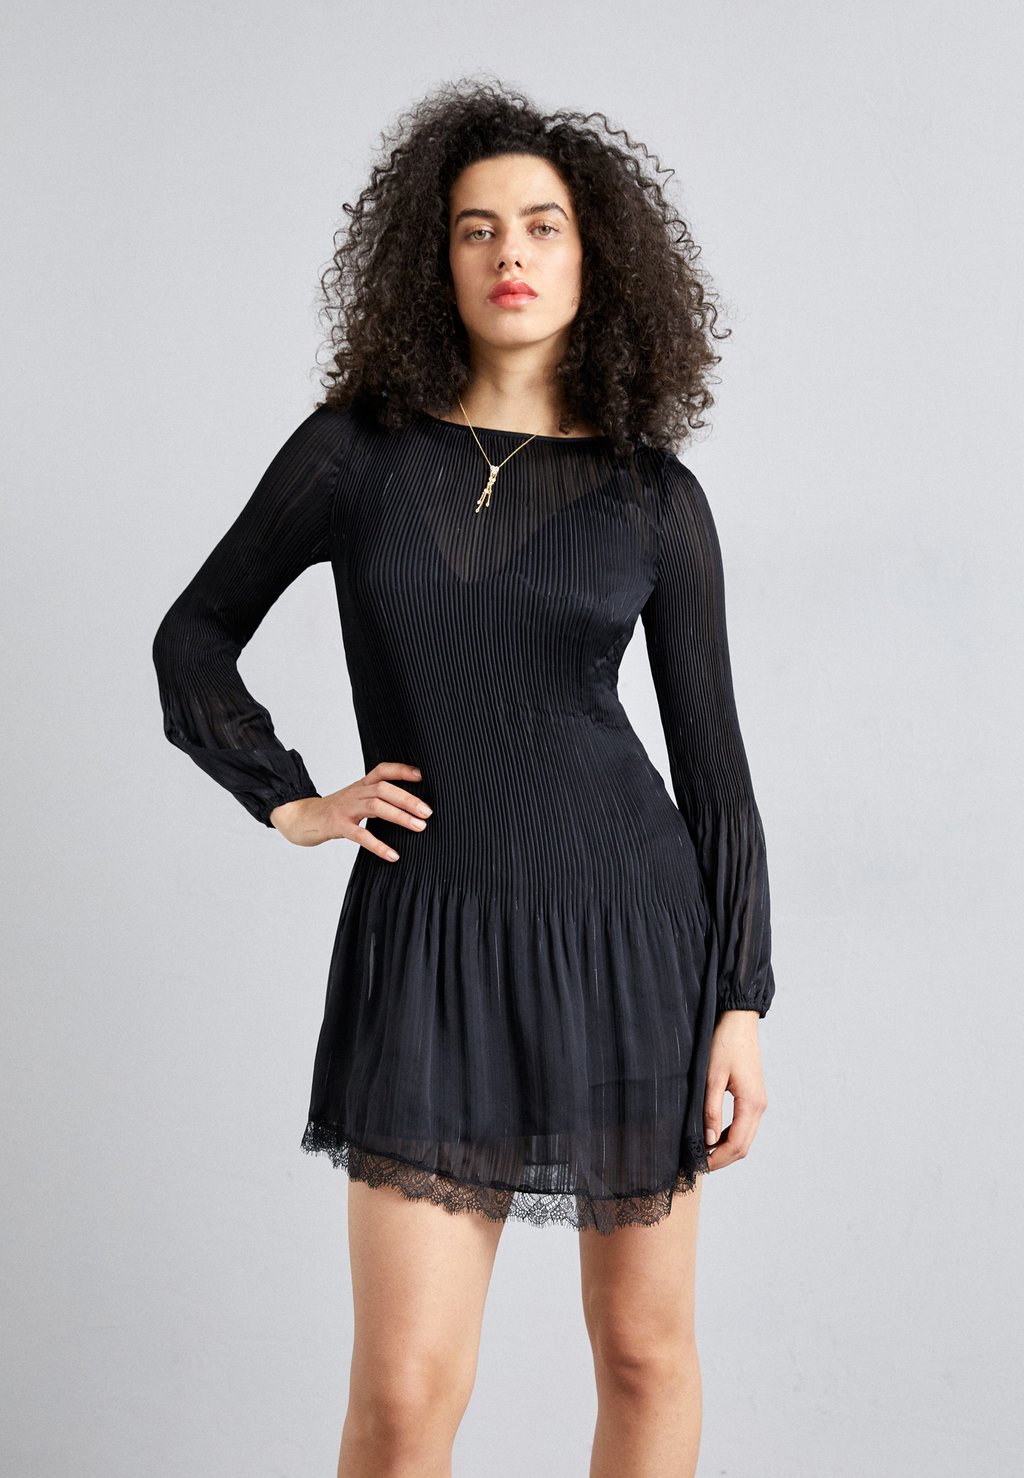 Элегантное платье Racky maje, цвет noir блейзер margot maje цвет noir